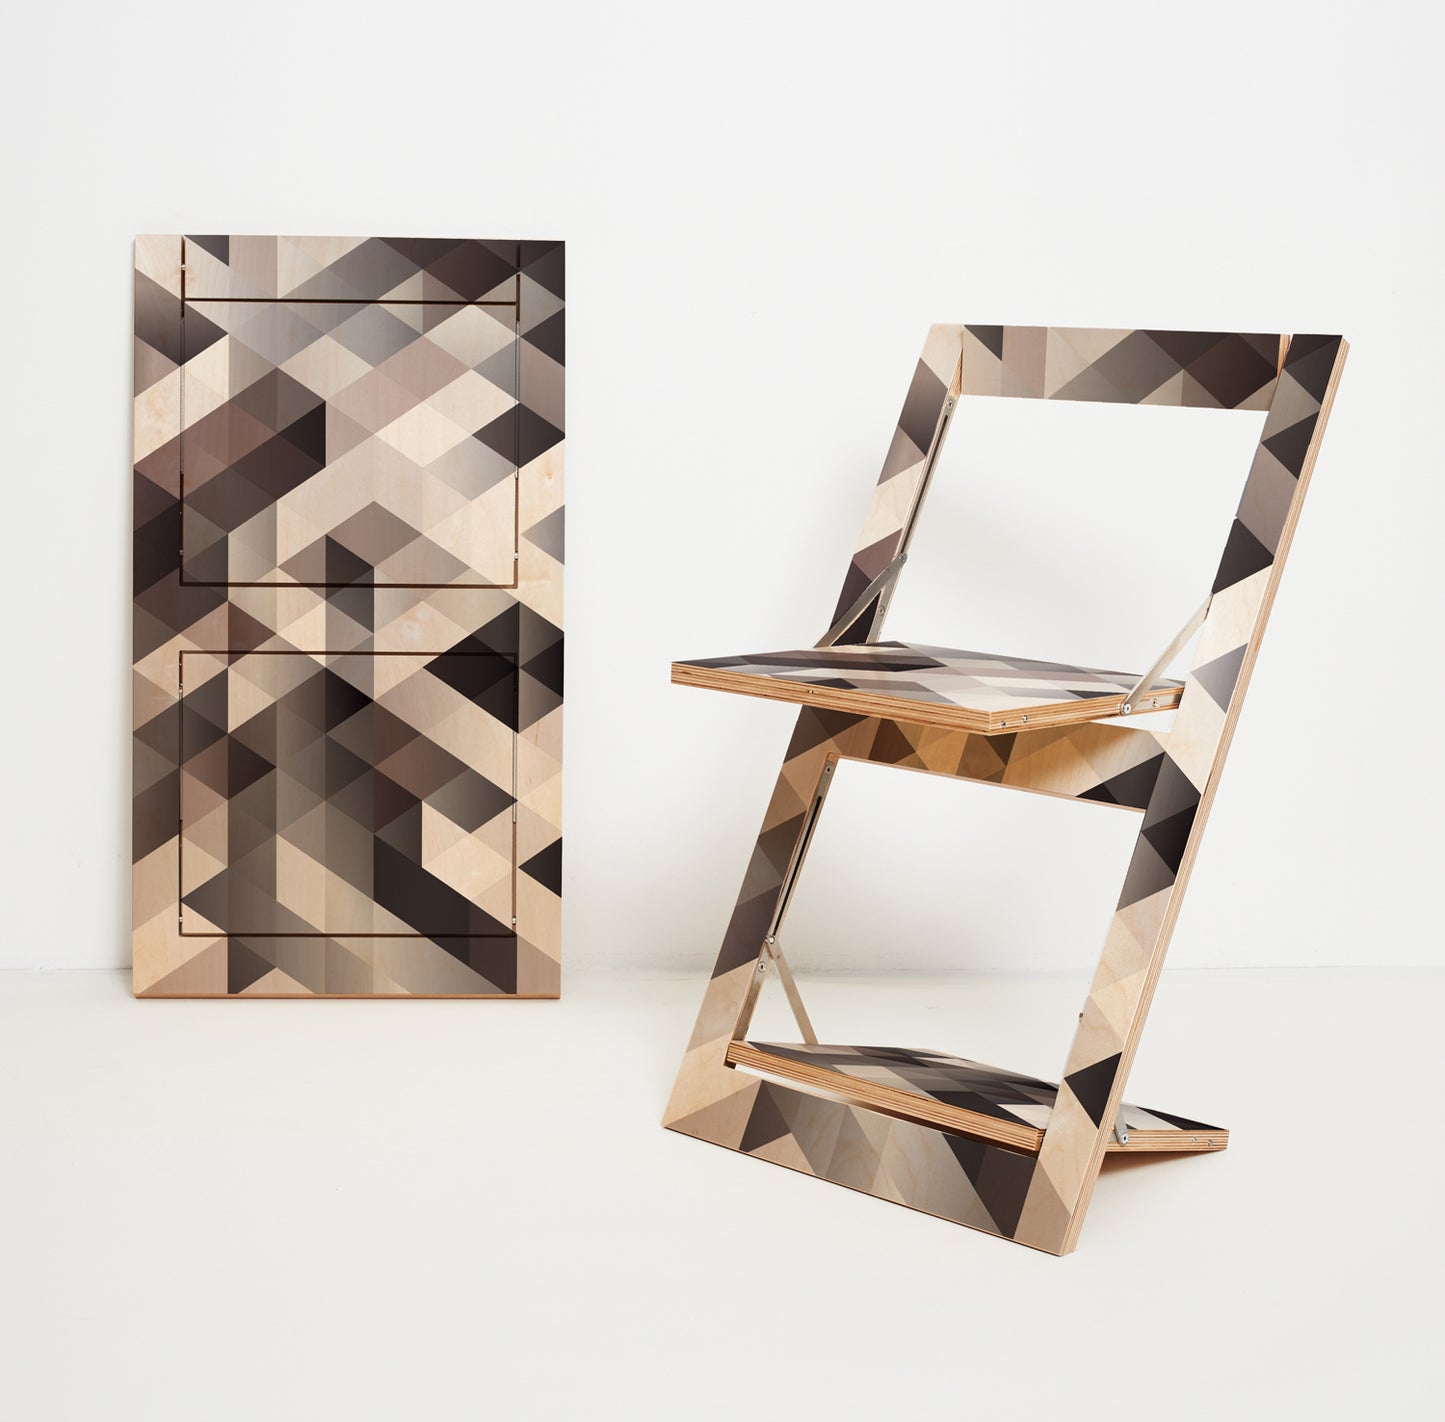 Fläpps Folding Chair – Criss Cross Gray (on birch)